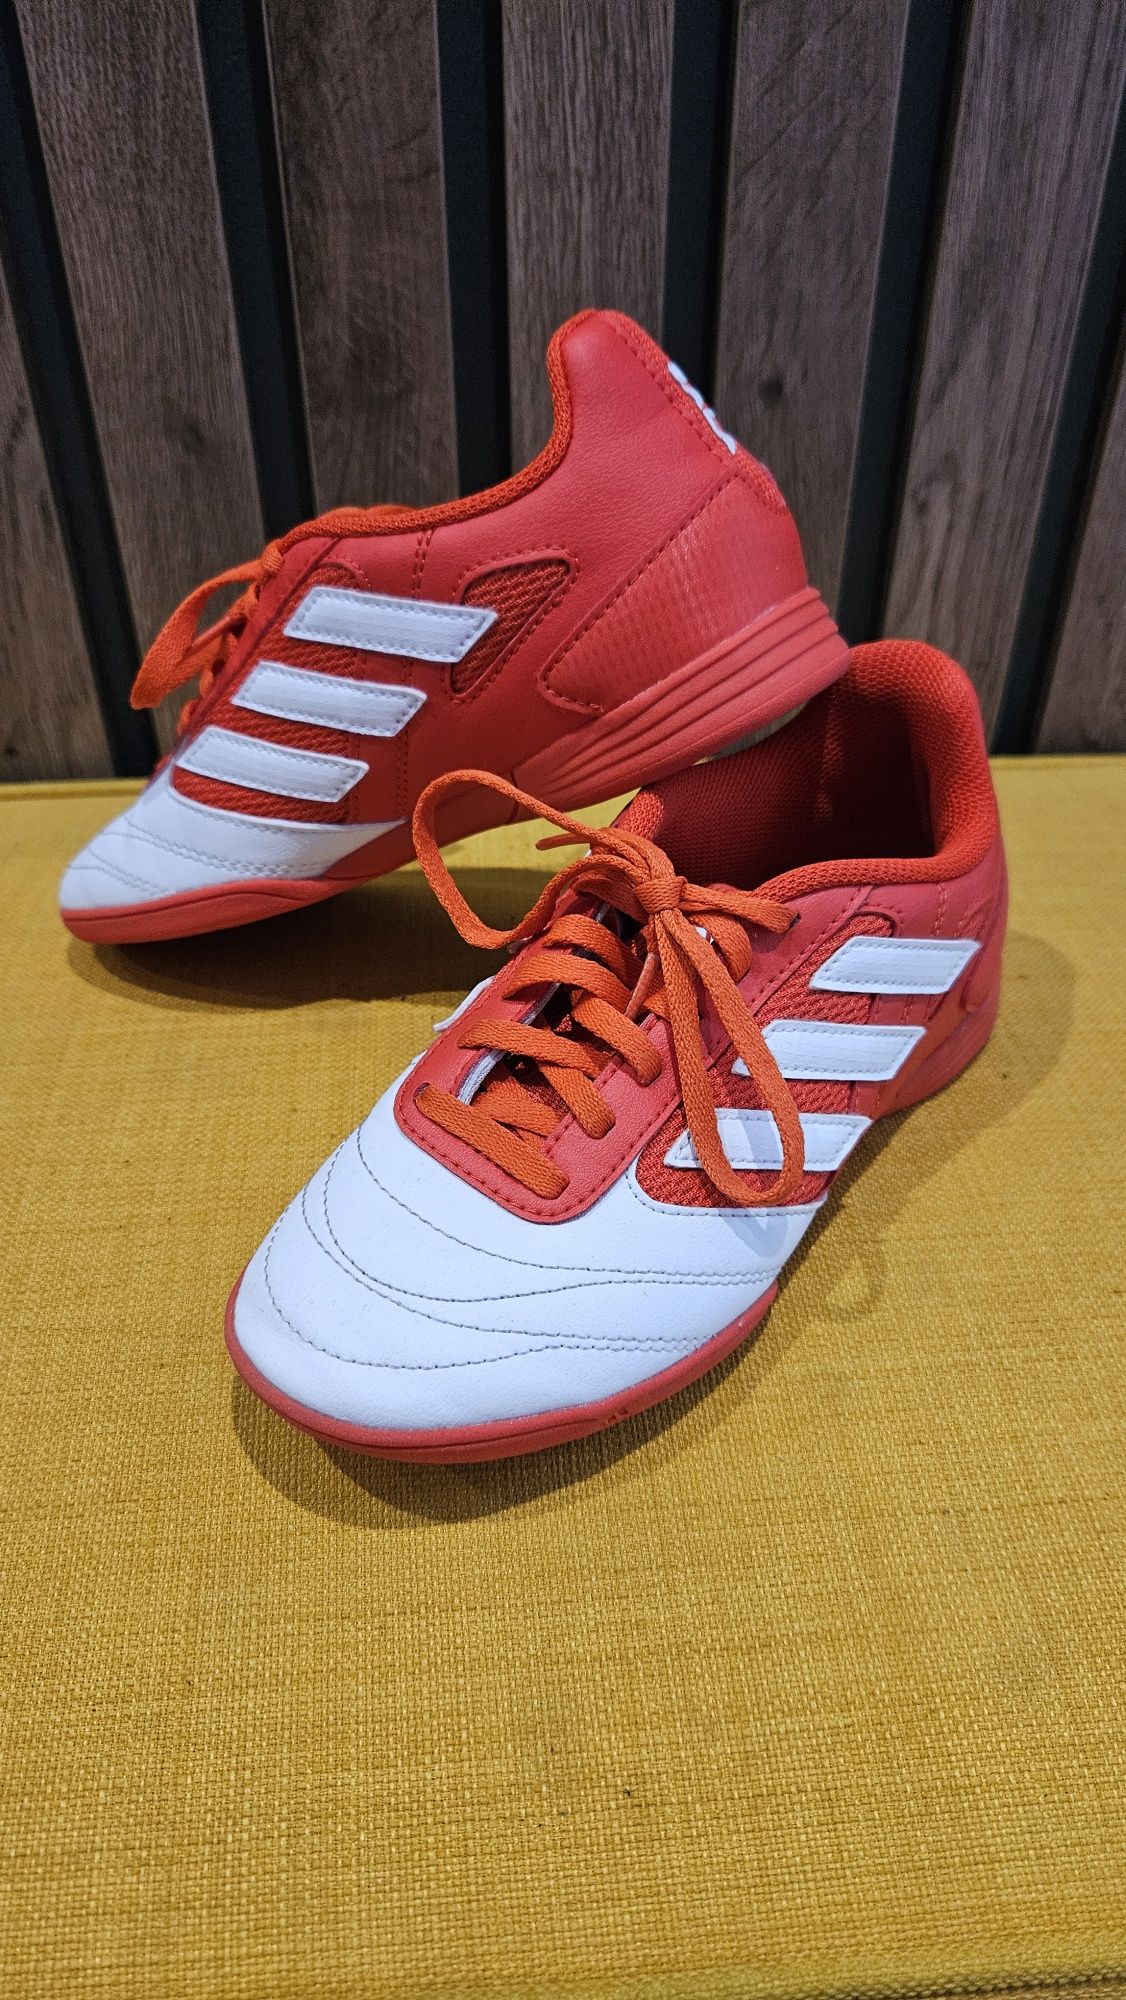 Buty piłkarskie Adidas SALA rozm. 34